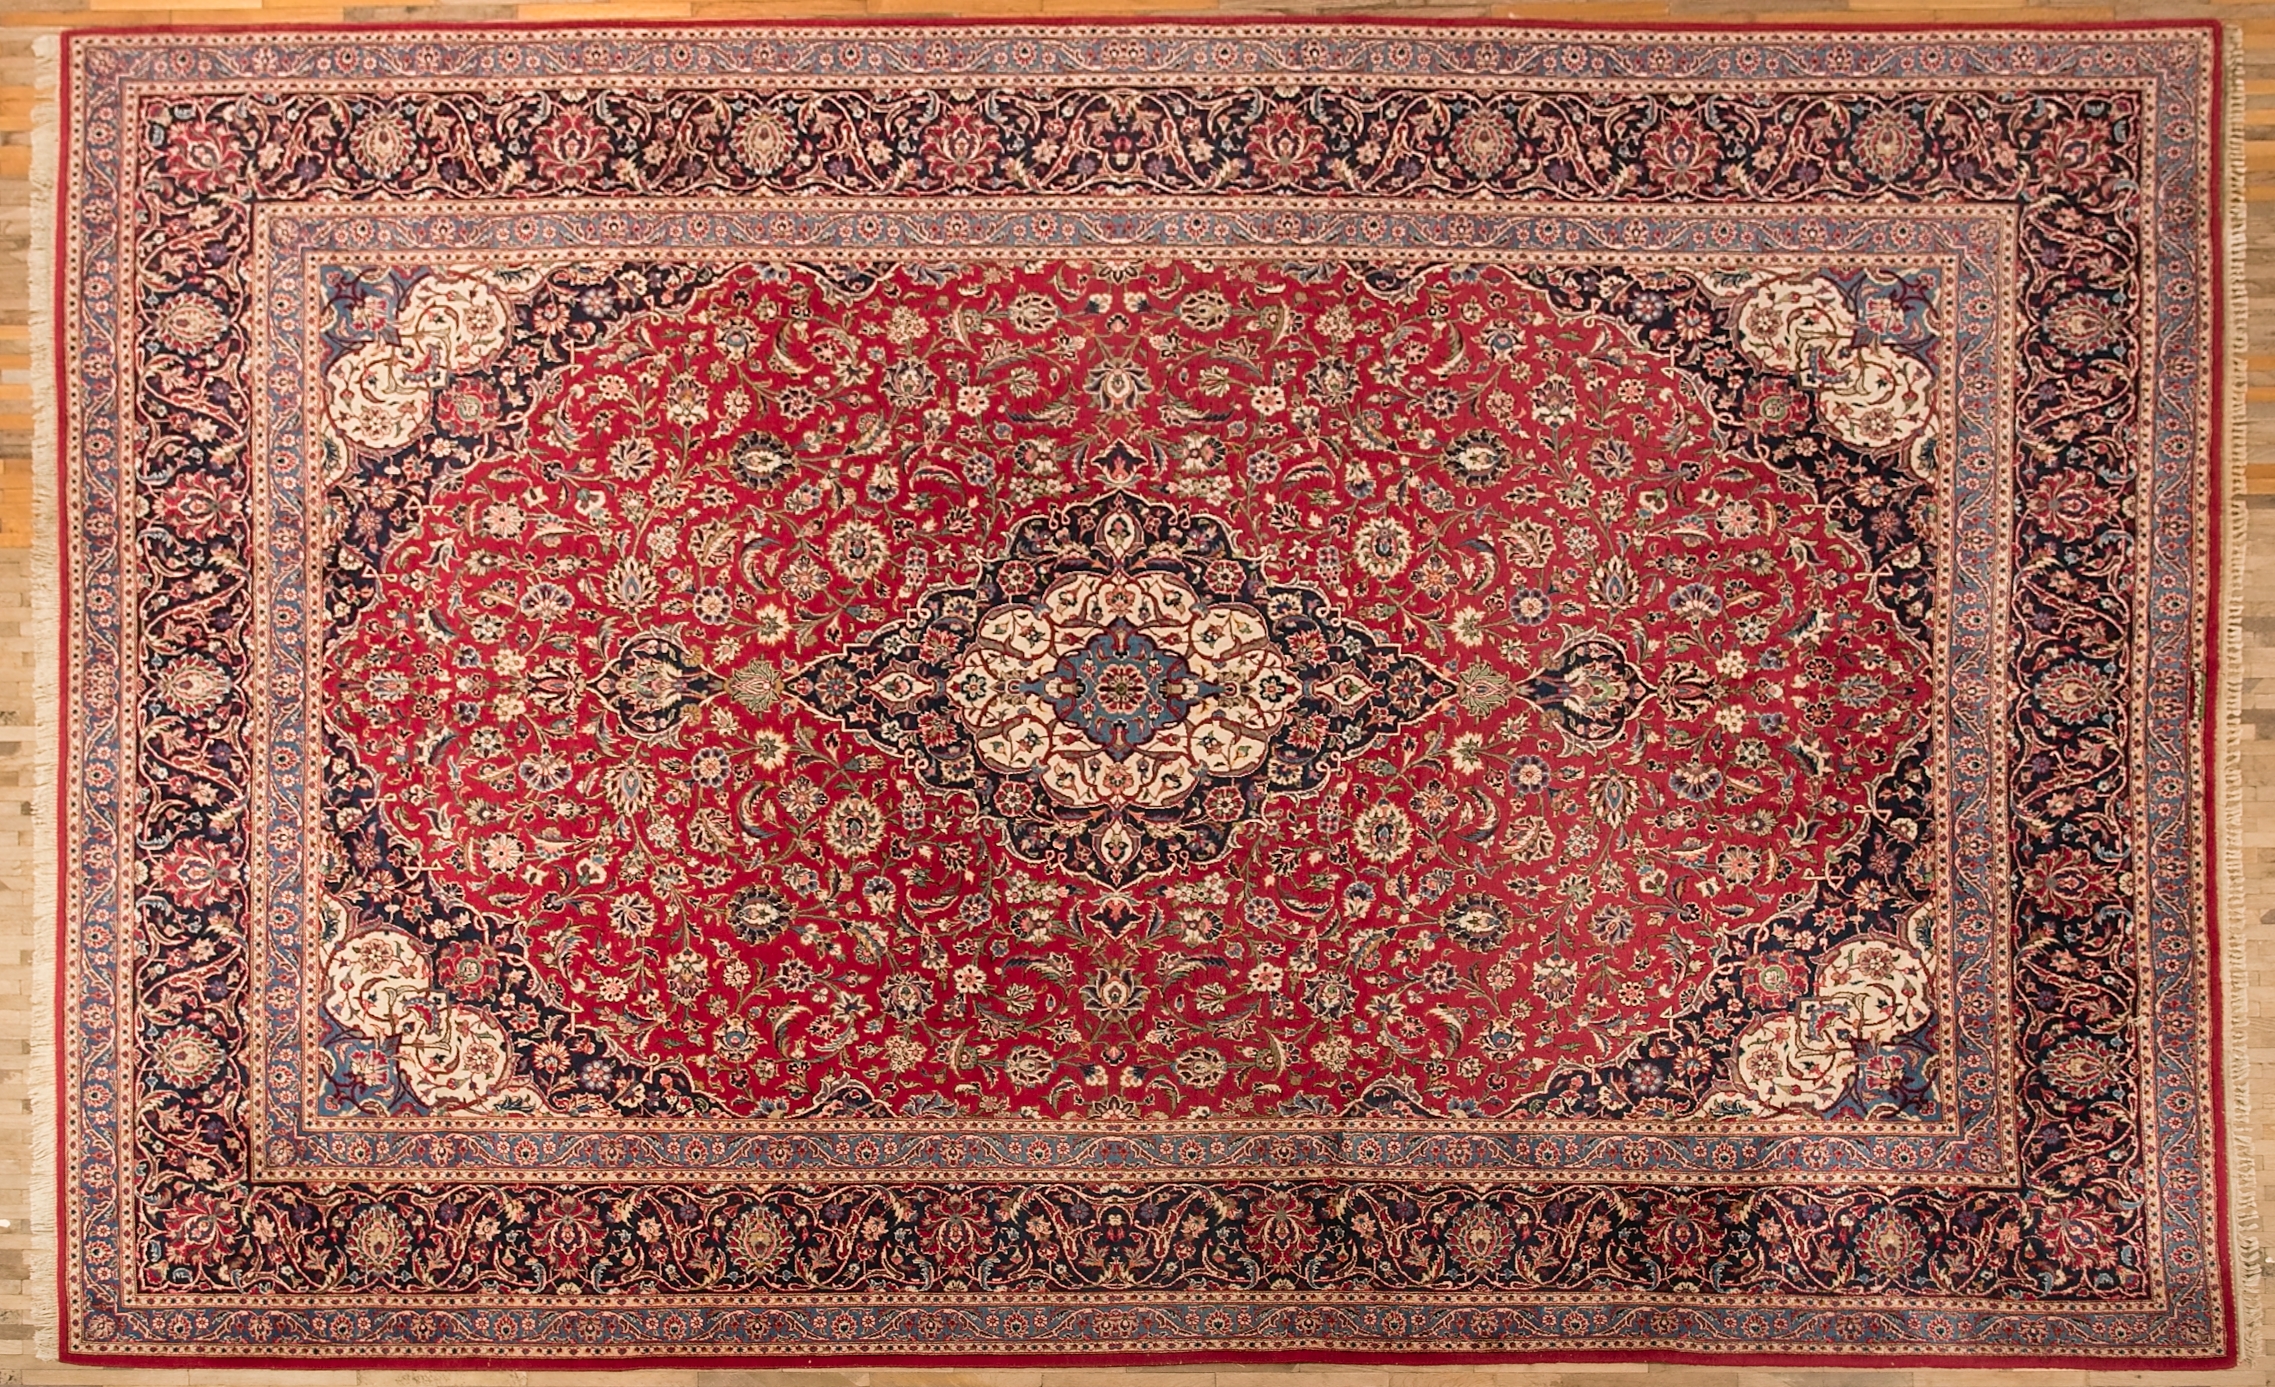 Velký perský koberec Kashan, signovaný 451 x 325 cm - 1